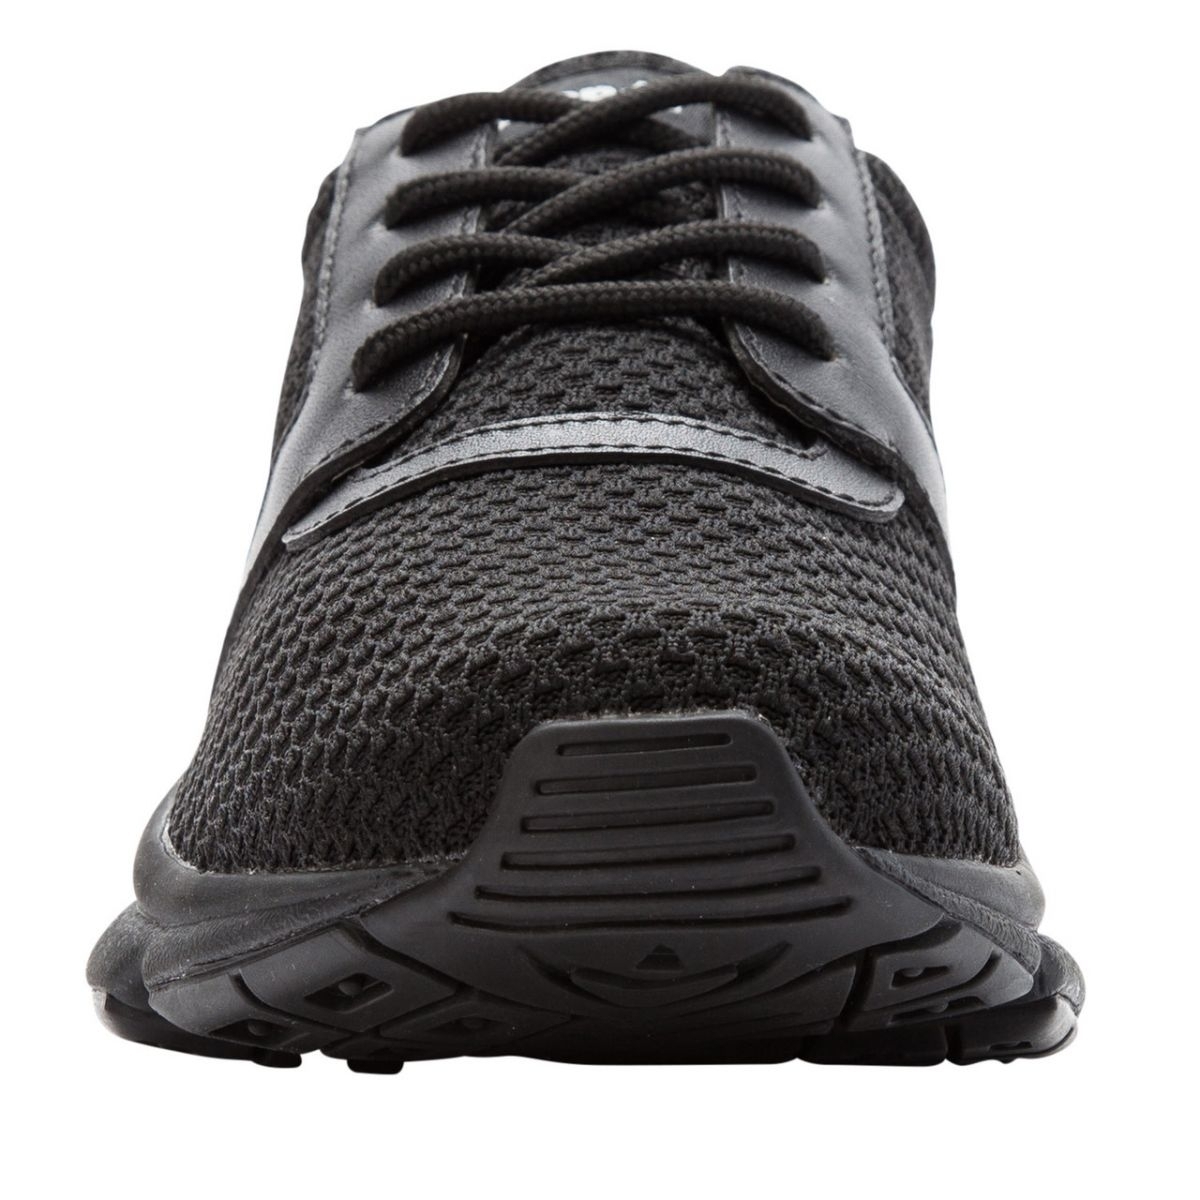 Propet Women's Stability X Walking Shoe Black - WAA032MBLK BLACK - BLACK, 8.5 Wide